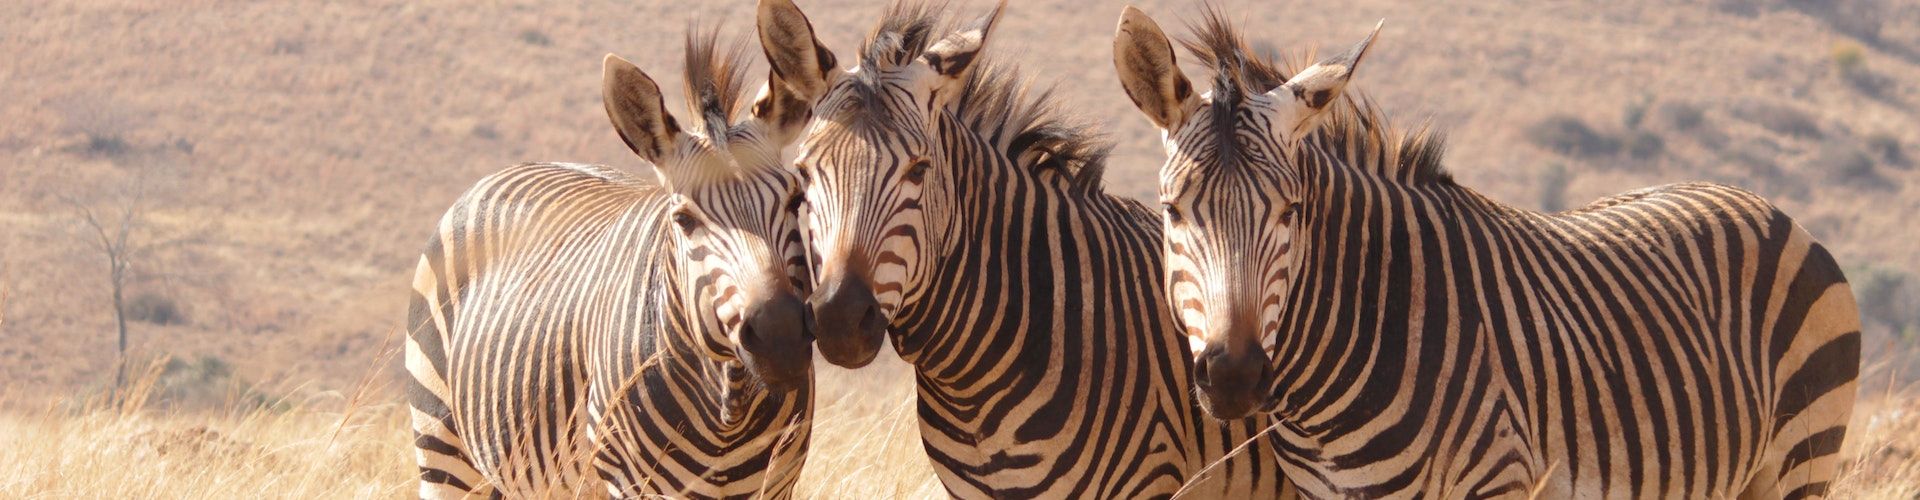 Neem contact op en geniet van een reis op maat met Shemeji Safari